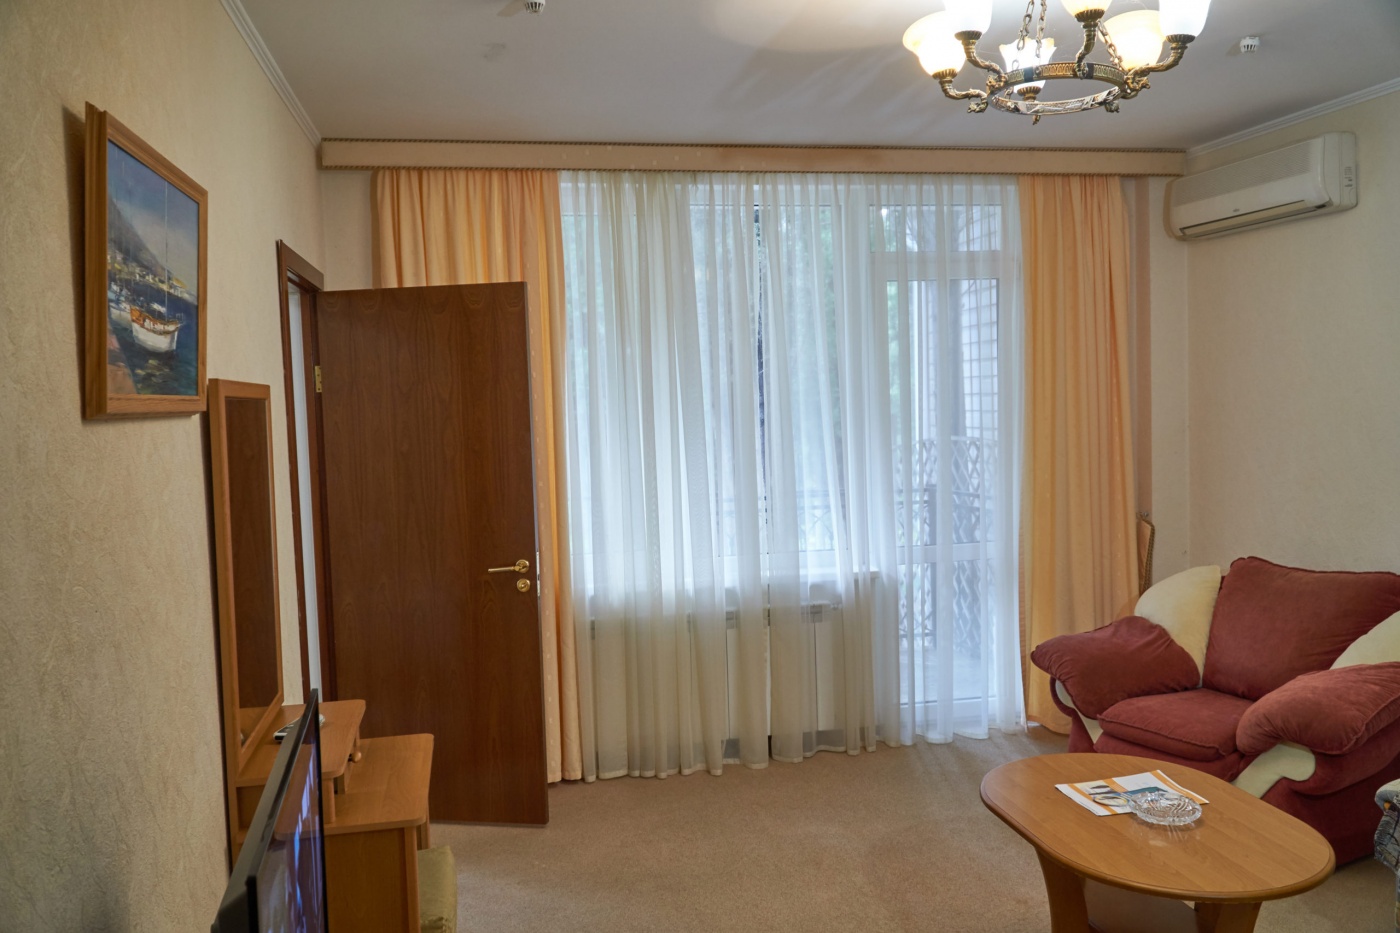  Отель «Сказка» Республика Крым Апартаменты класса Люкс 2-комнатный, фото 2